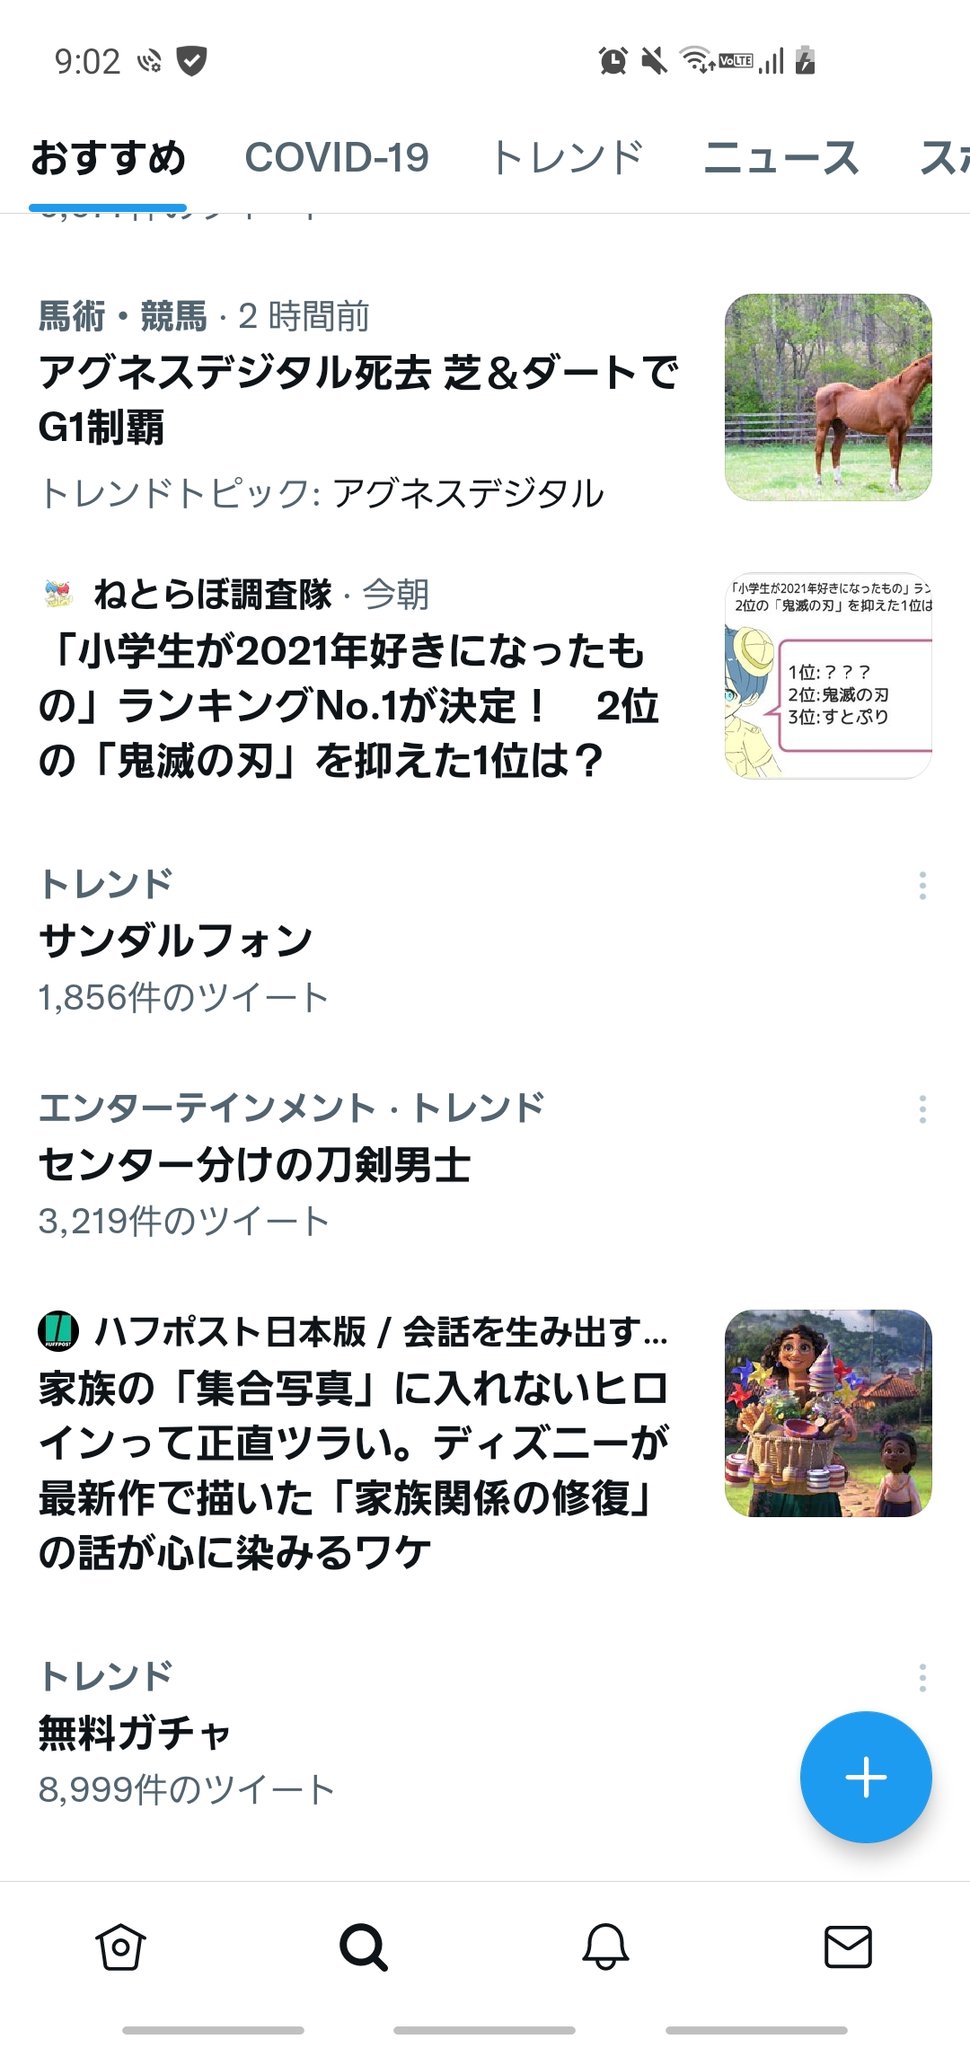 See Taka Llshappon1 S Tweet On Dec 8 21 Twitter